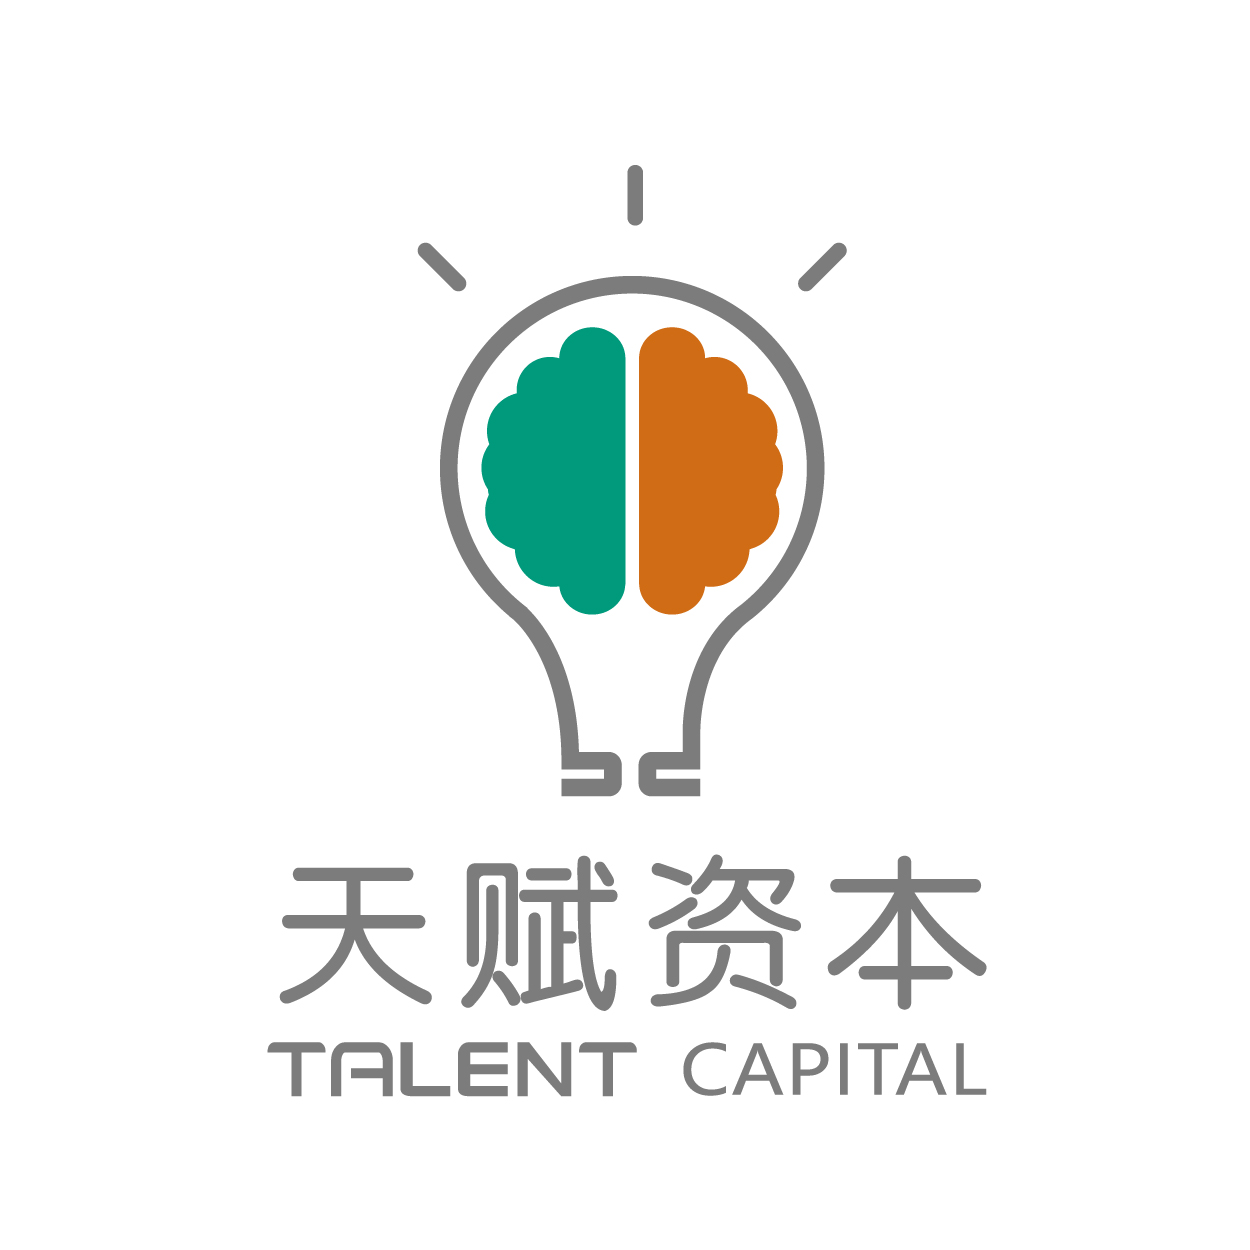 上海天賦動力股權投資基金管理有限公司